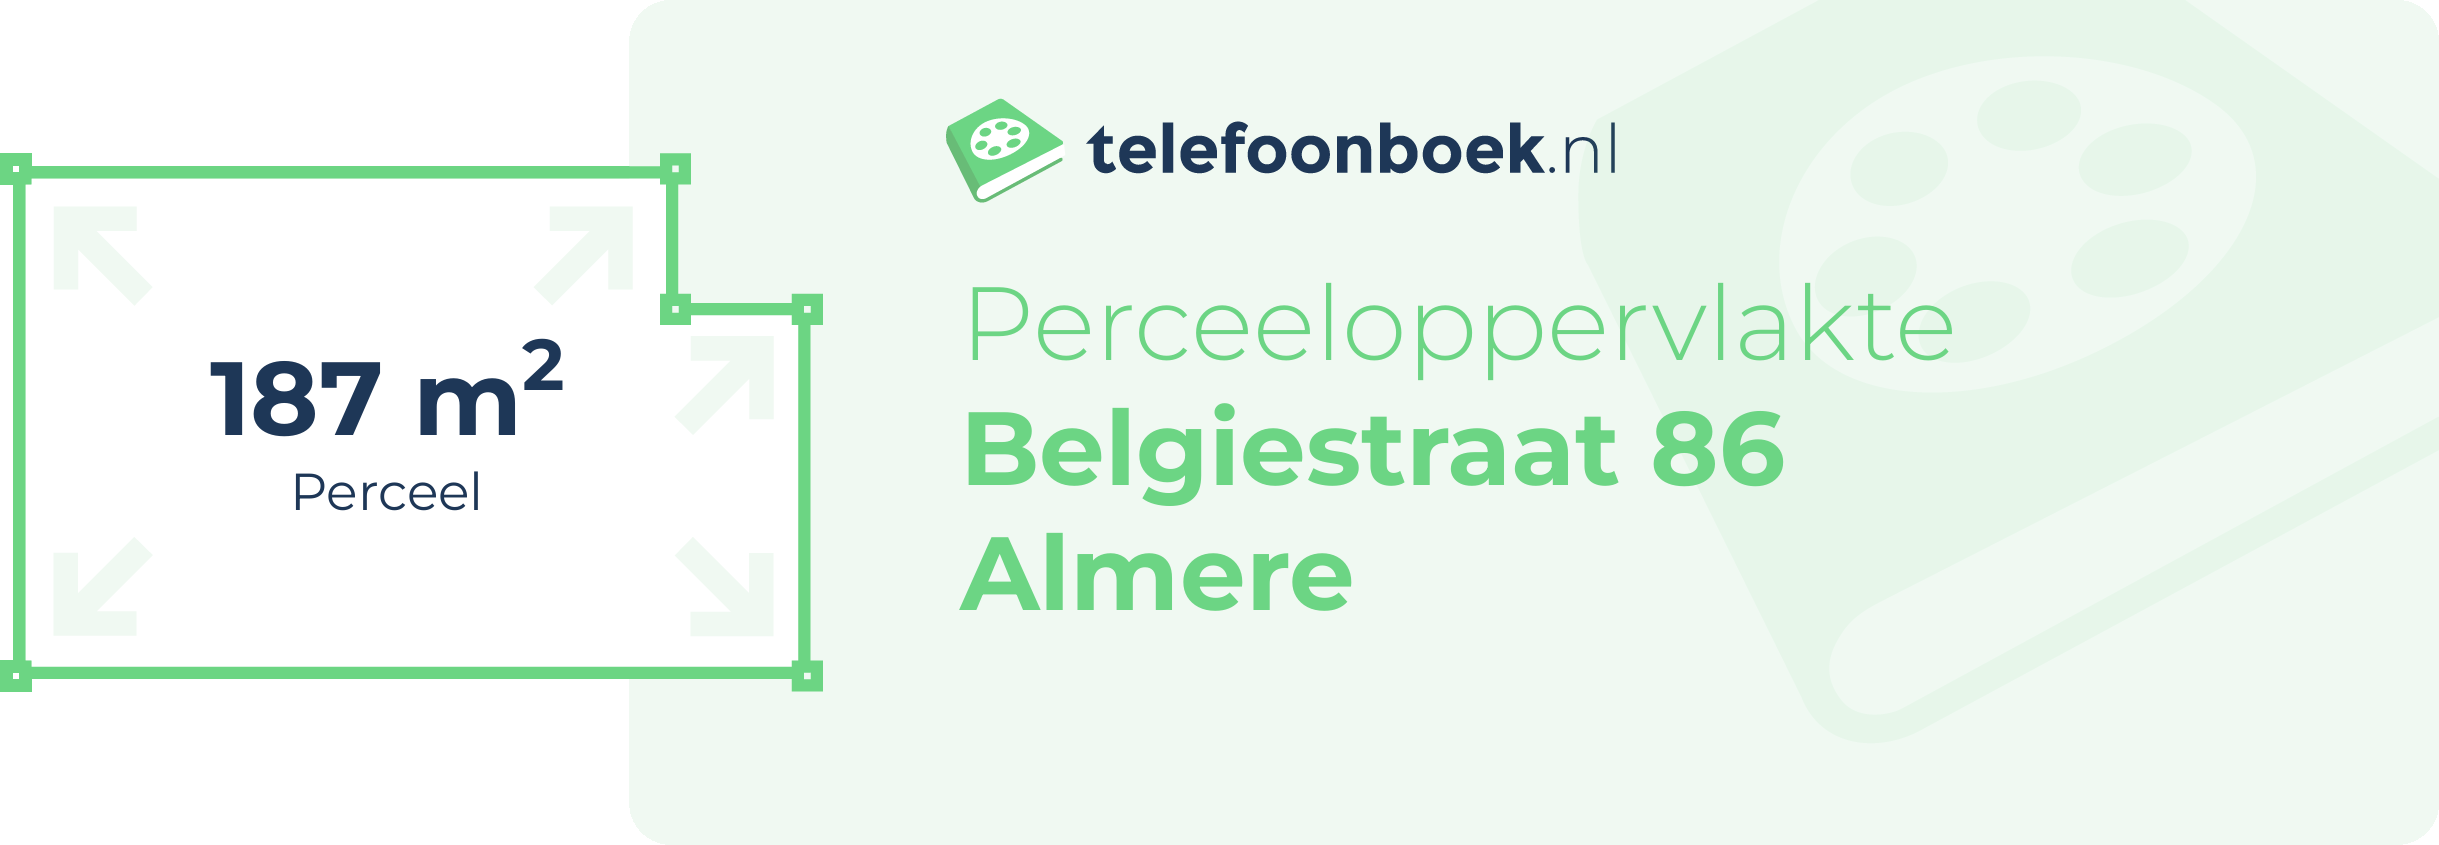 Perceeloppervlakte Belgiestraat 86 Almere